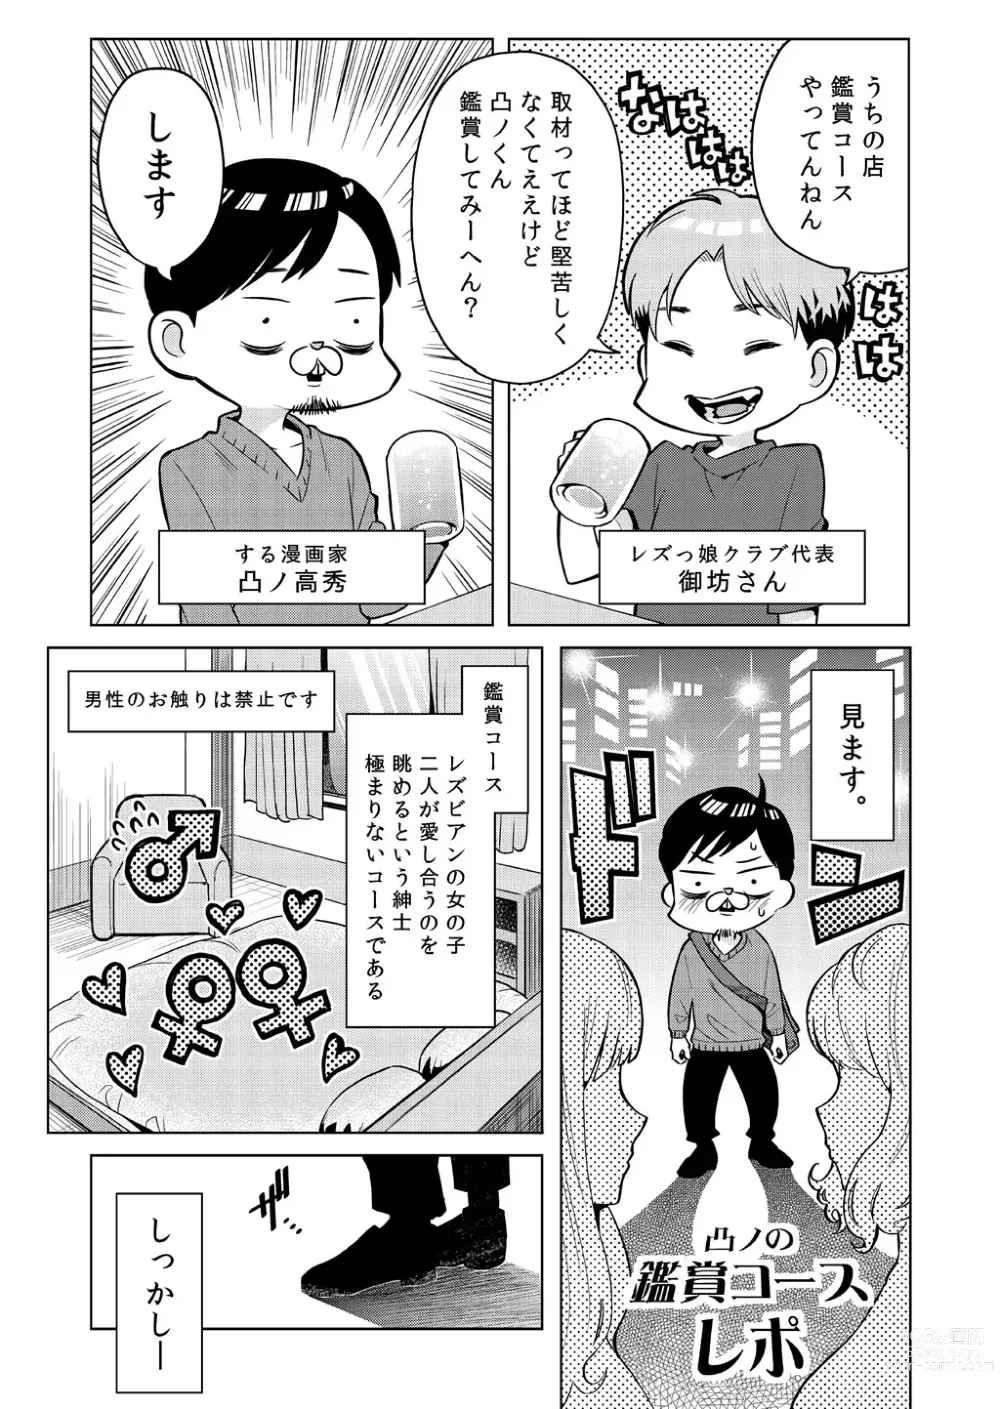 Page 1 of doujinshi Totsuno no Kanshou Kousurepo